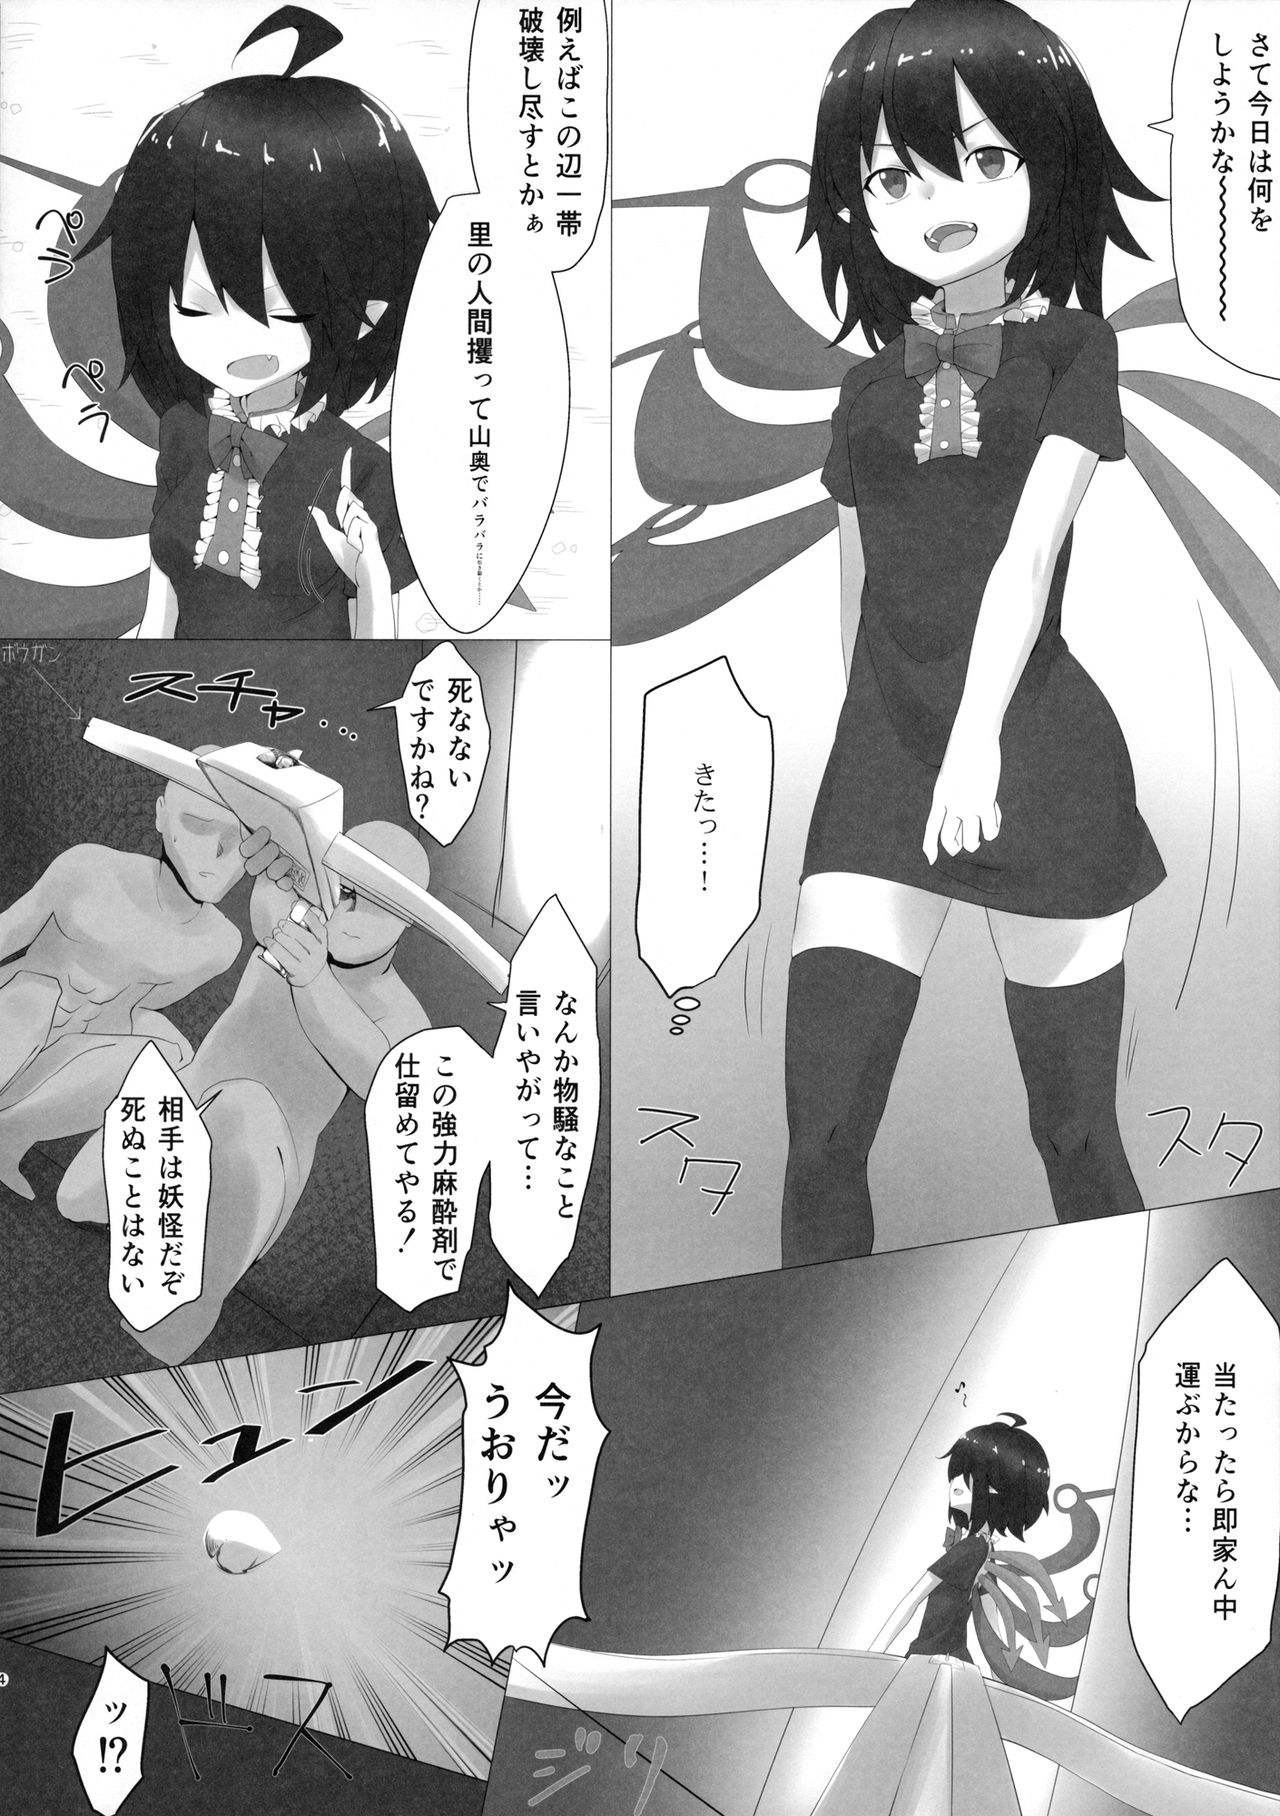 (Reitaisai 14) [LightGuide (Kisamu)] Nue Suikan (Touhou Project) page 3 full